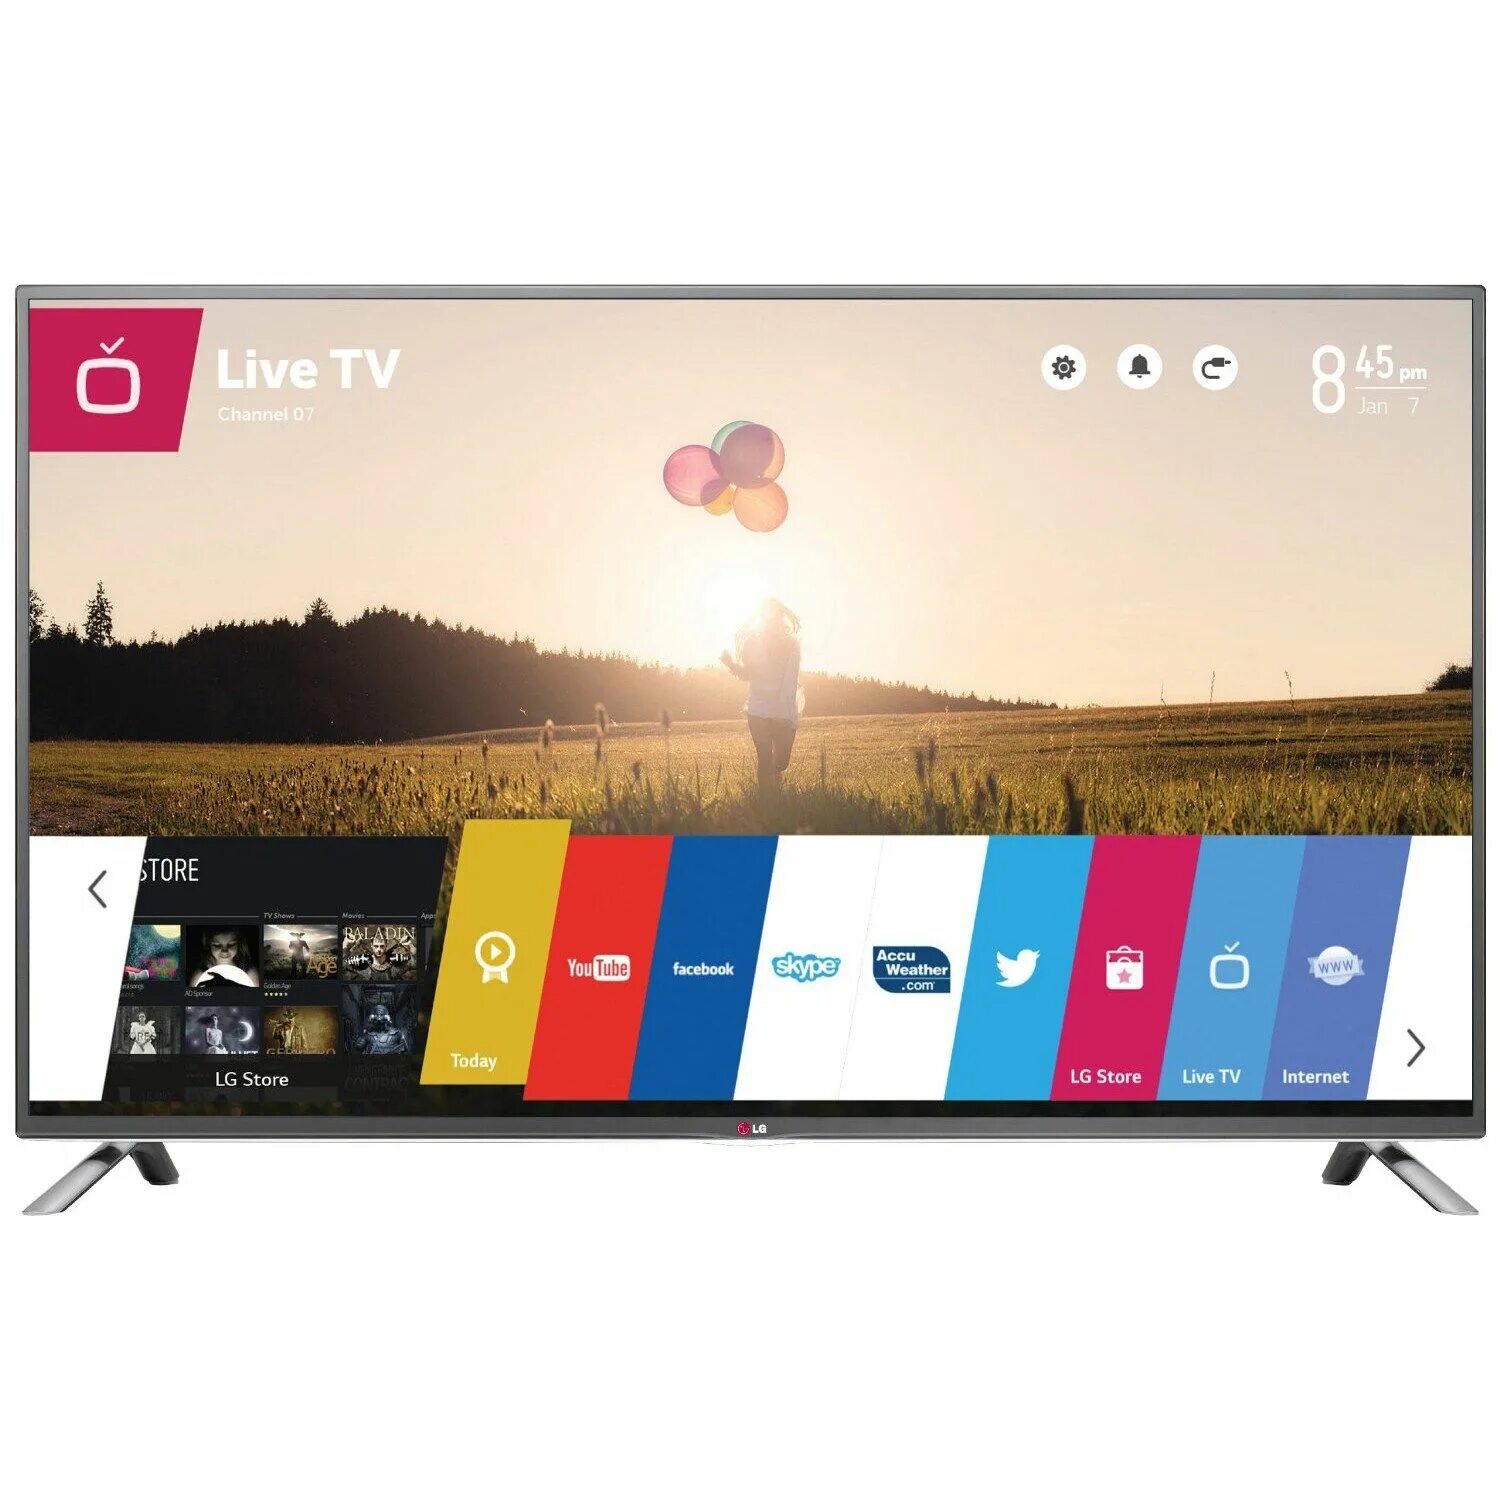 Lg 32lb580u. LG Smart TV 32lb58. LG WEBOS Smart 3d. LG Smart TV WEBOS led. LG 60 lb580v.